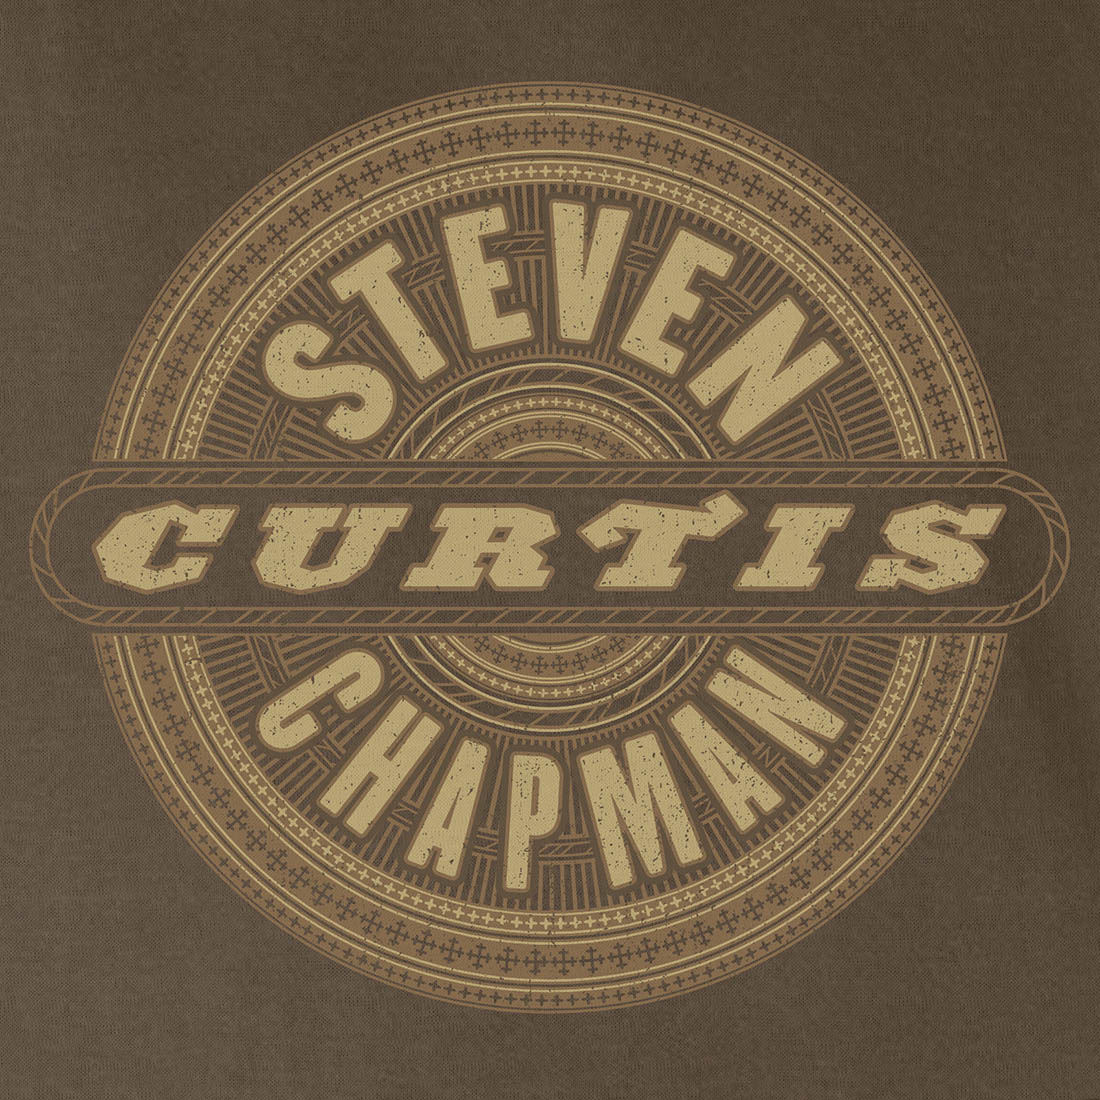 Steven Curtis Chapman t-shirt design